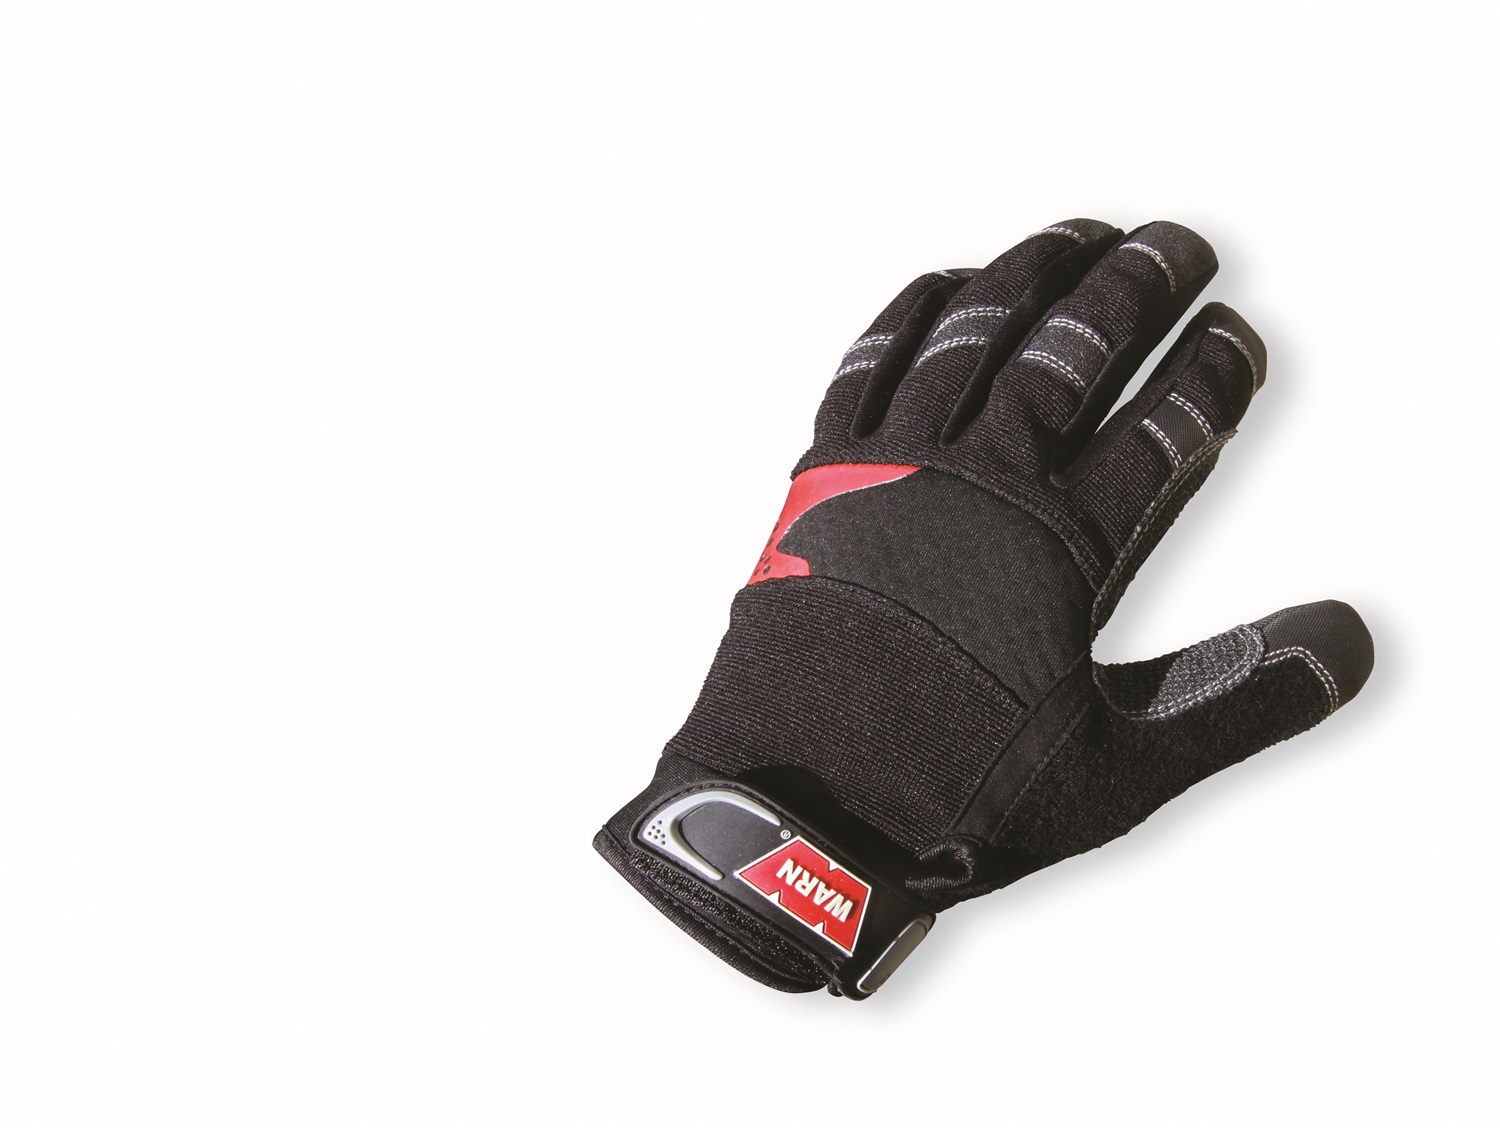 Warn Warn 91650 Gloves